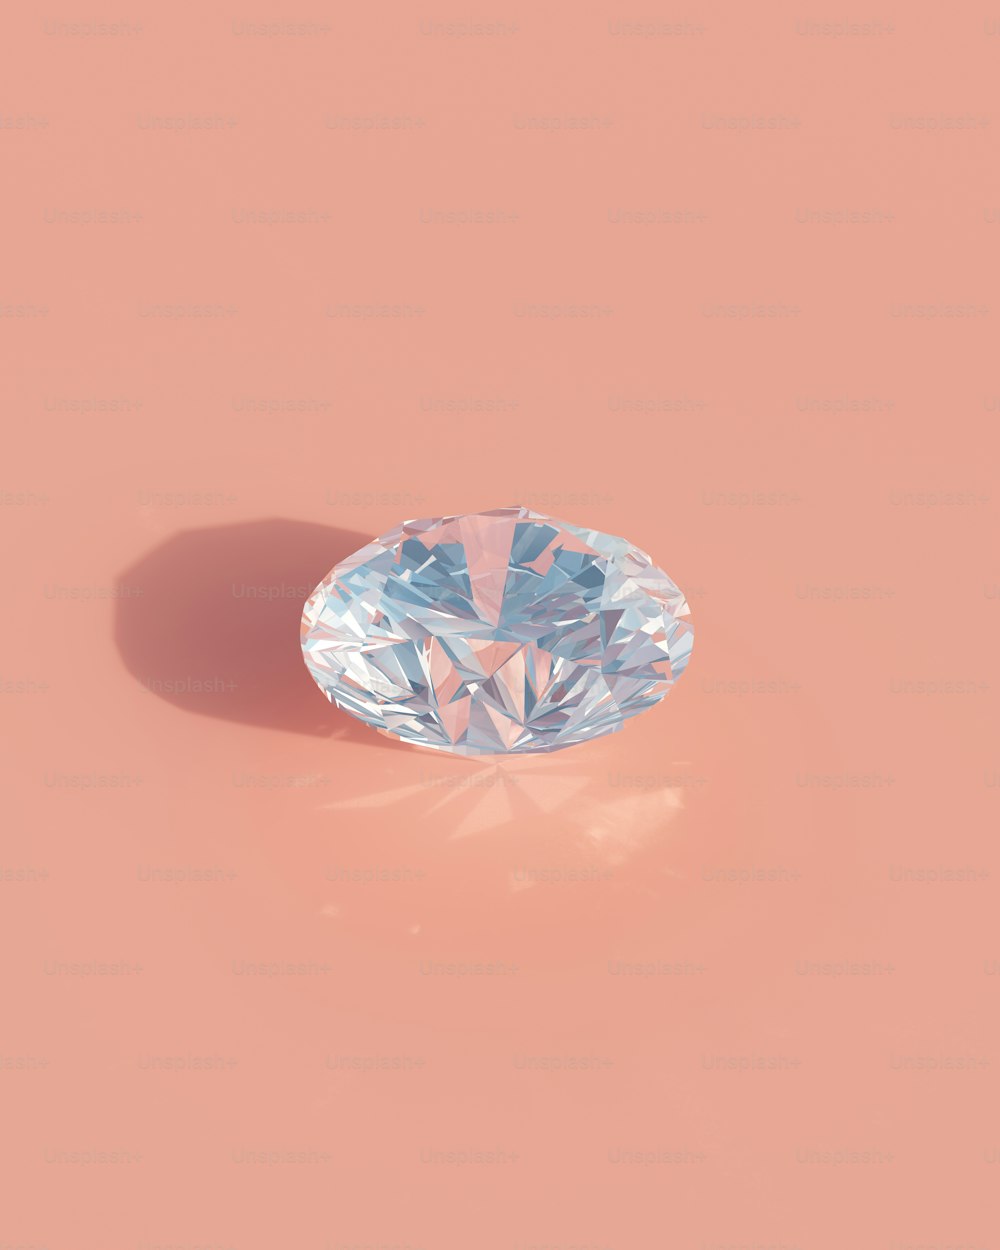 a light blue diamond on a pink background